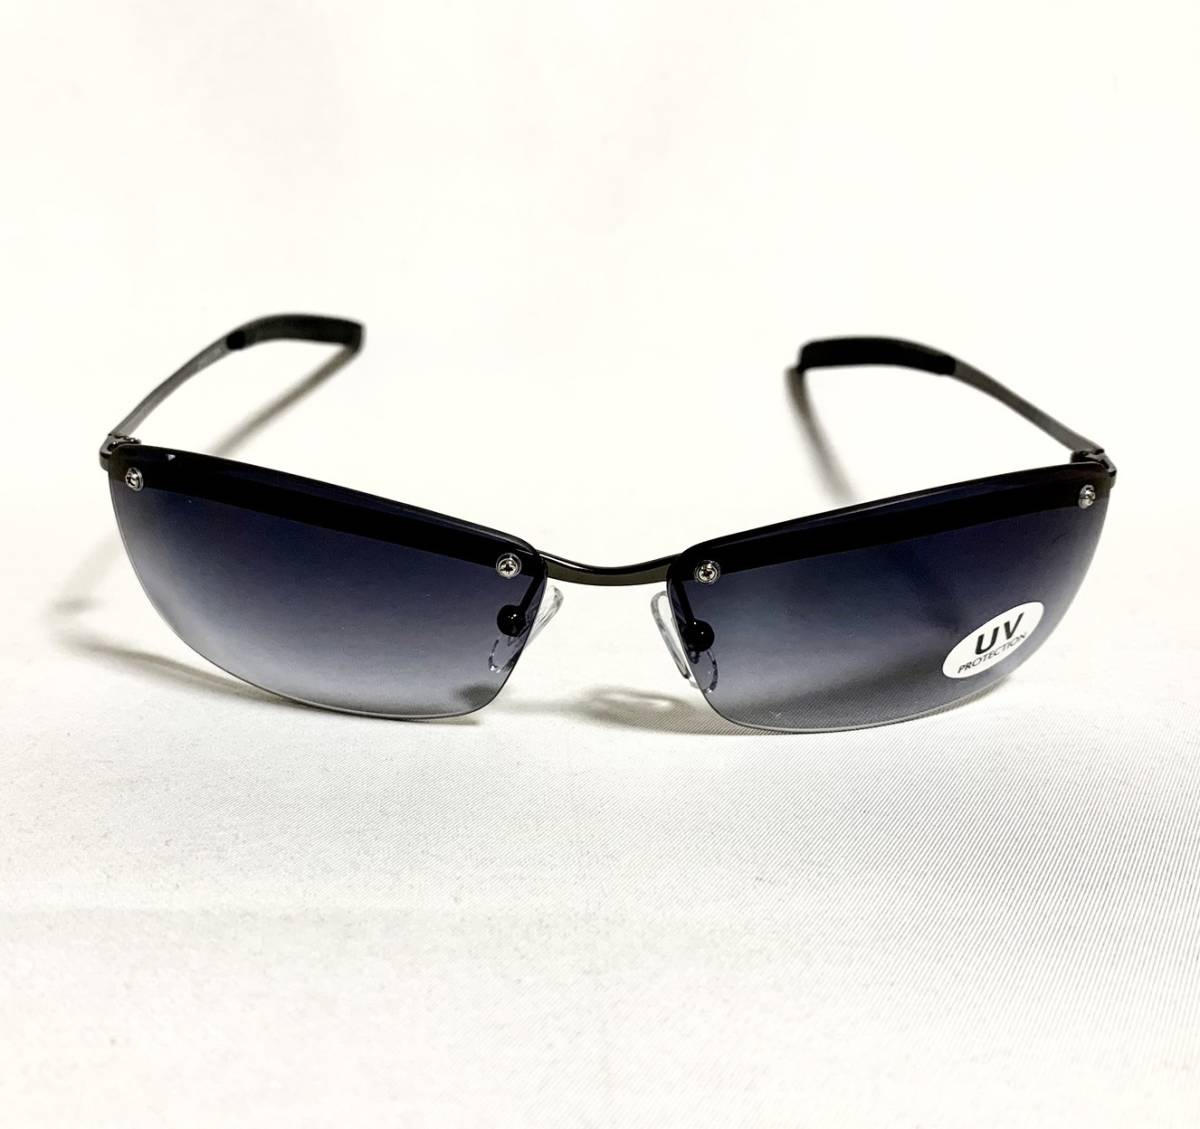 2112-3 アイブロー スモークハーフ レンズ ベッカムモデル かっこいいサングラス 再販 メンズサングラス サングラスギフト_画像2